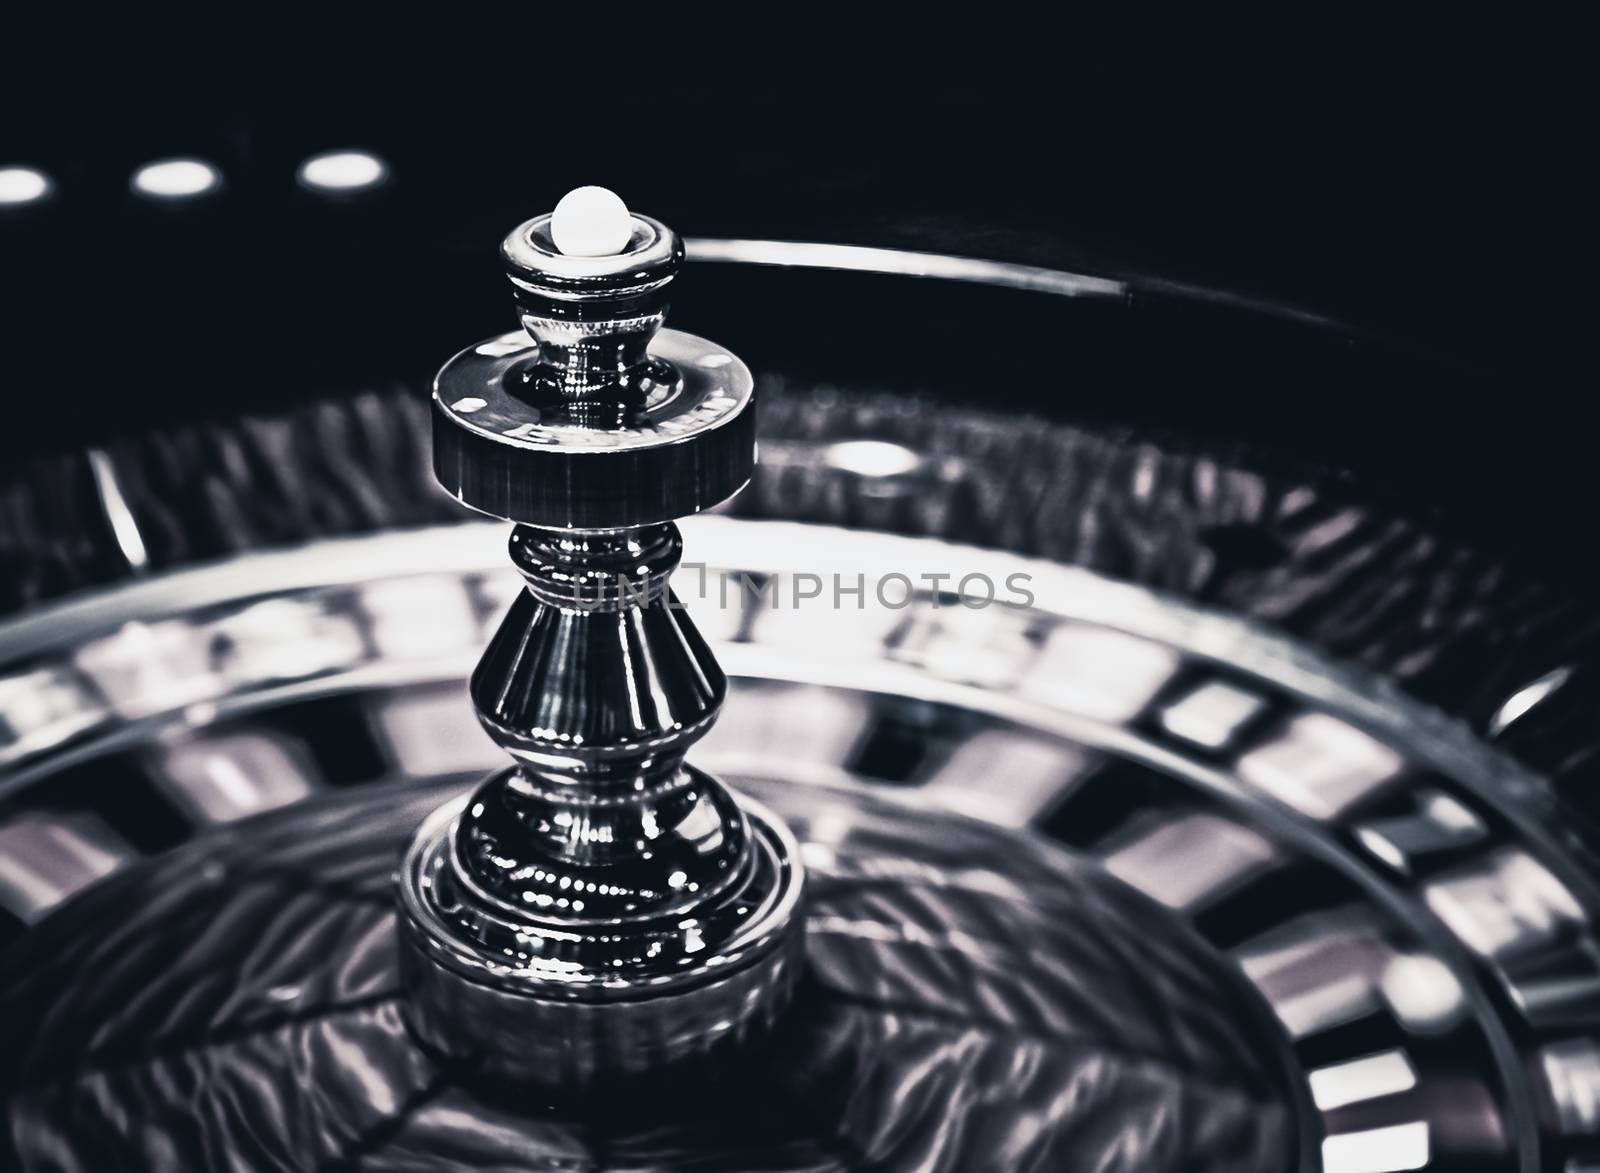 Roulette wheel in casino, gambling ads